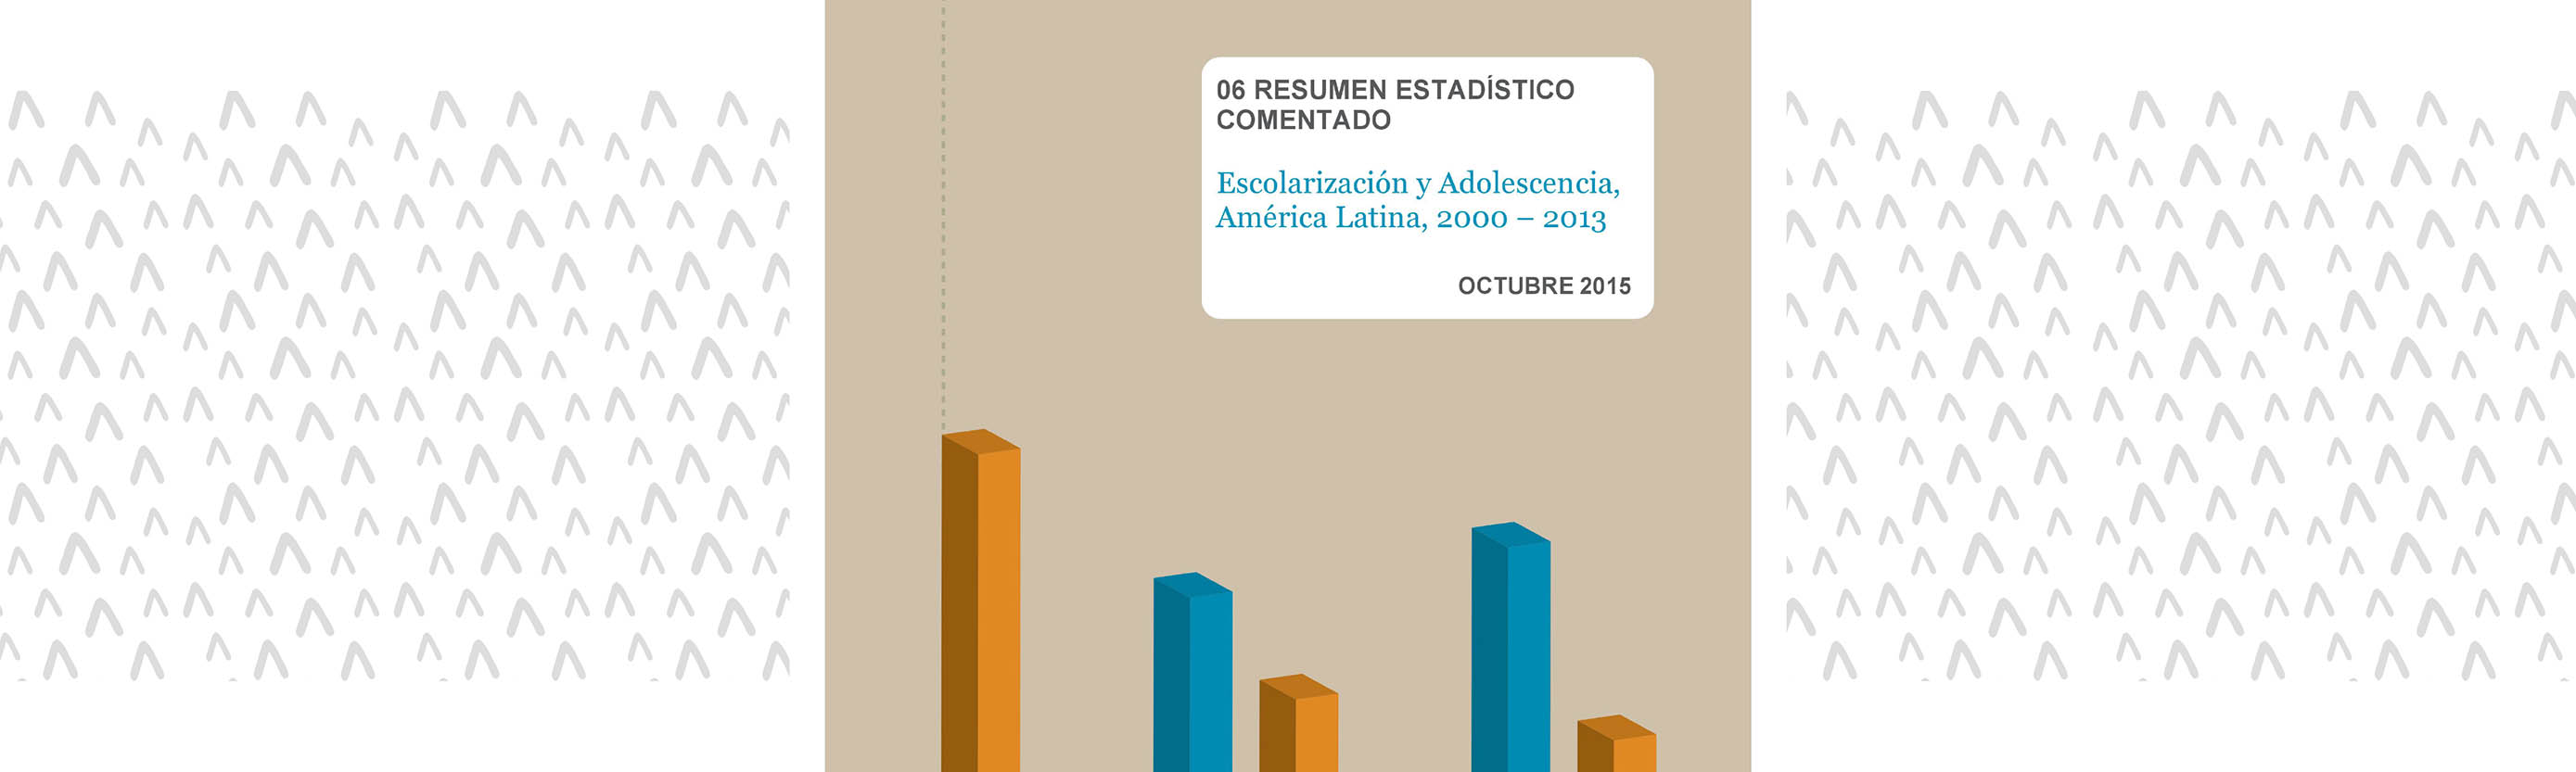 Escolarización y adolescencia, América Latina 2000 - 2013